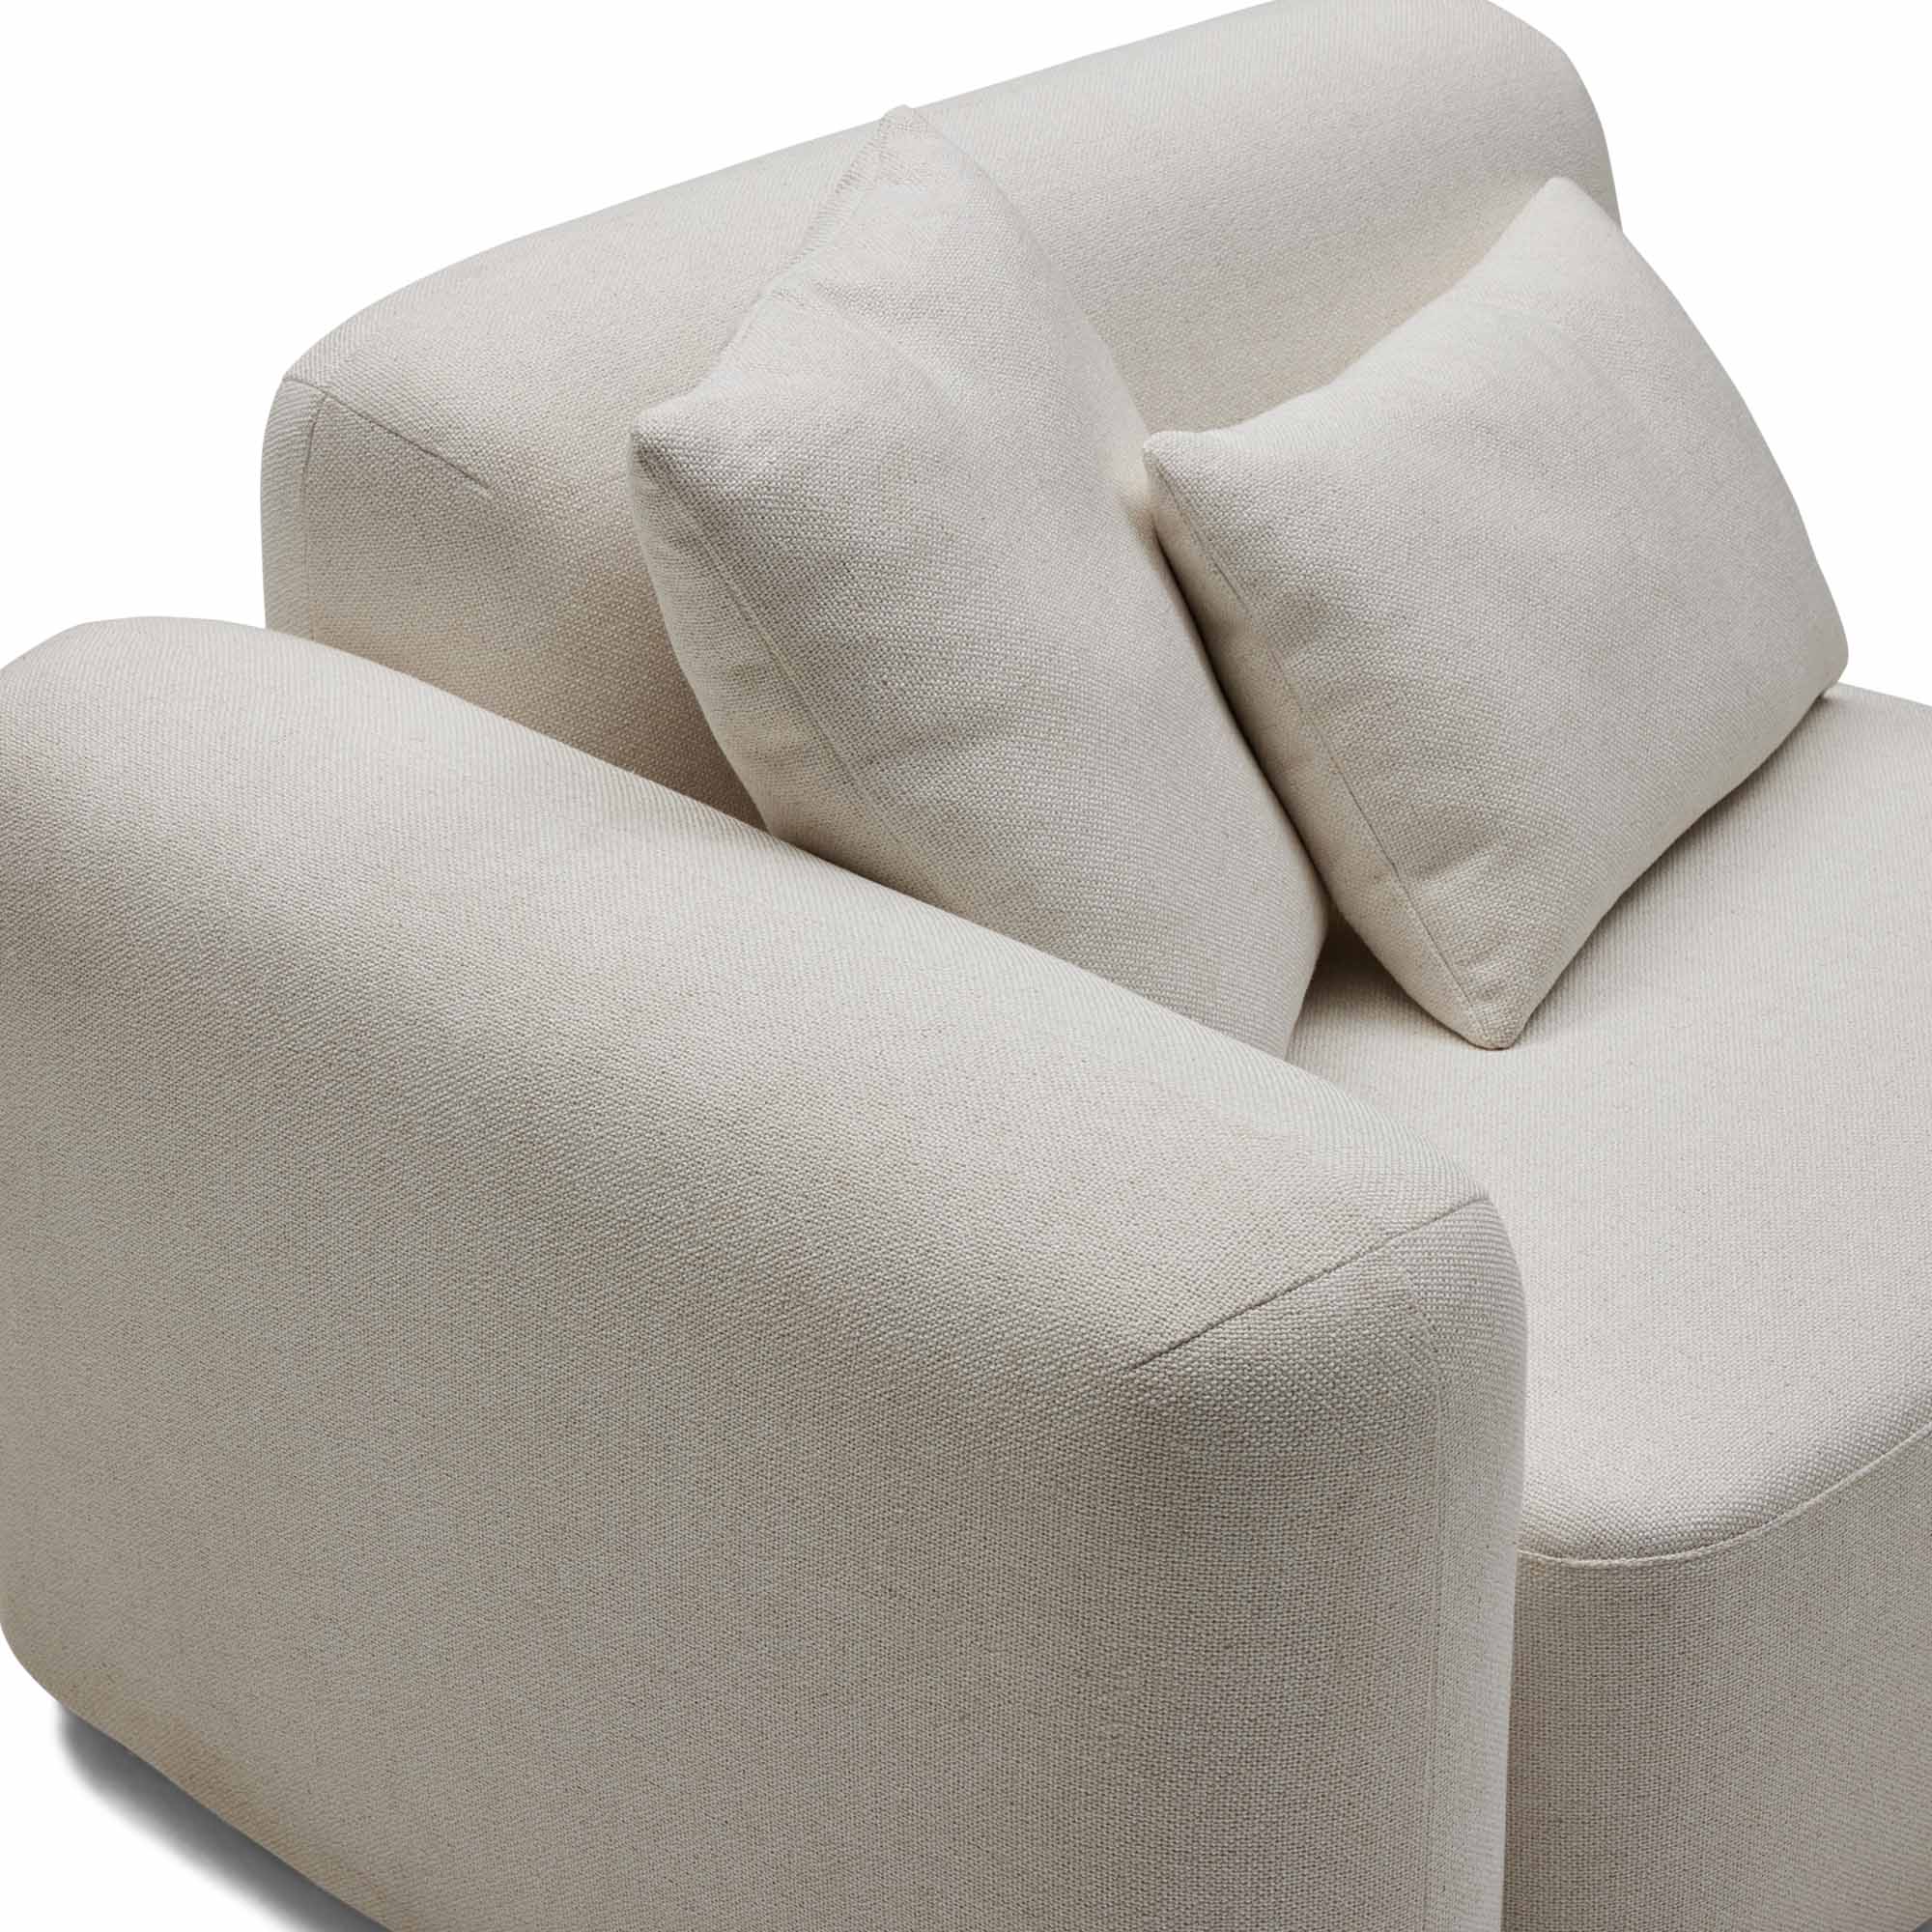 Pascal Modular Sofa Ivory 3 Seat